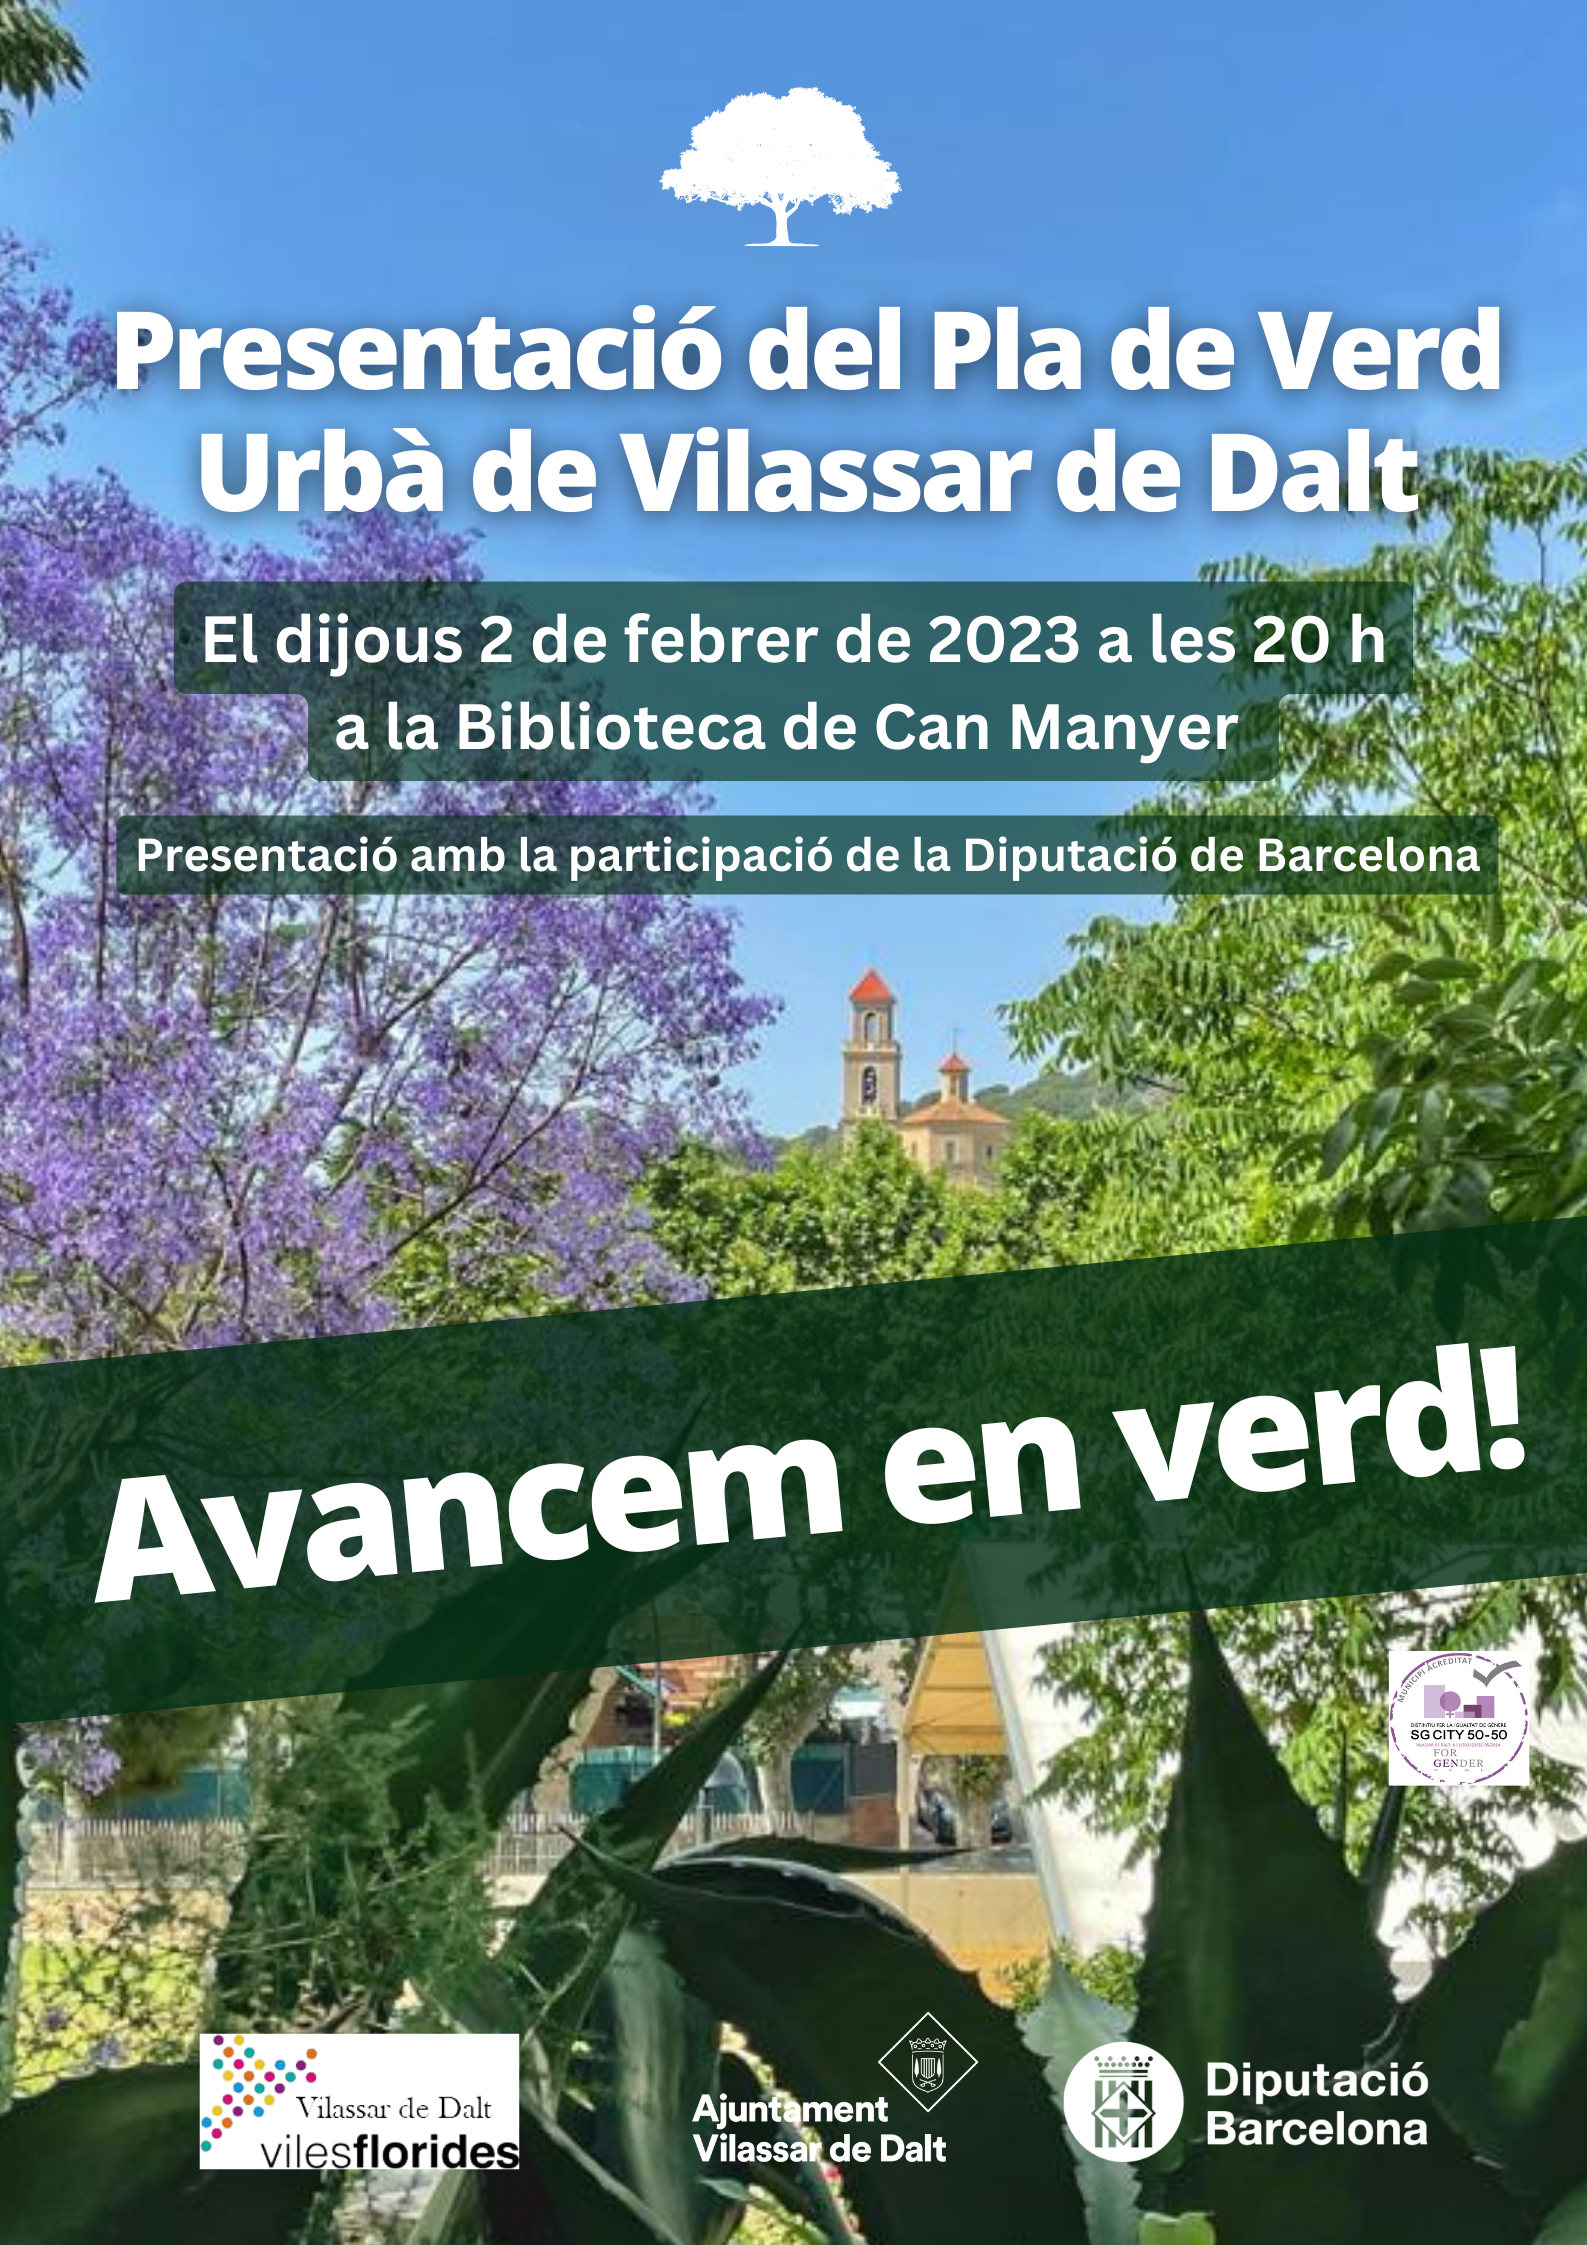 Presentació del Pla de verd urbà de Vilassar de Dalt